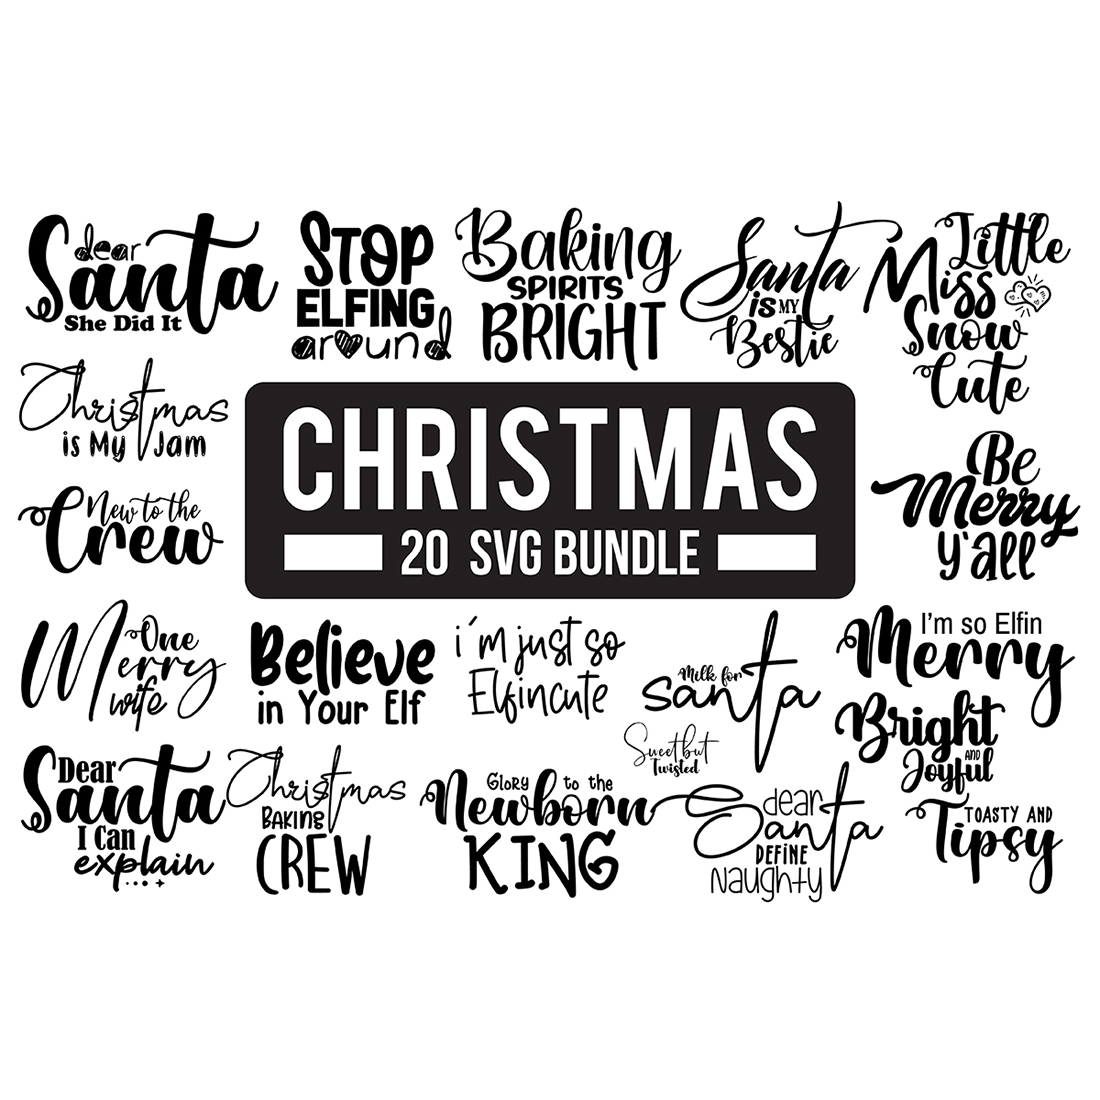 Christmas SVG Bundle, Winter SVG Bundle, Santa SVG cover image.